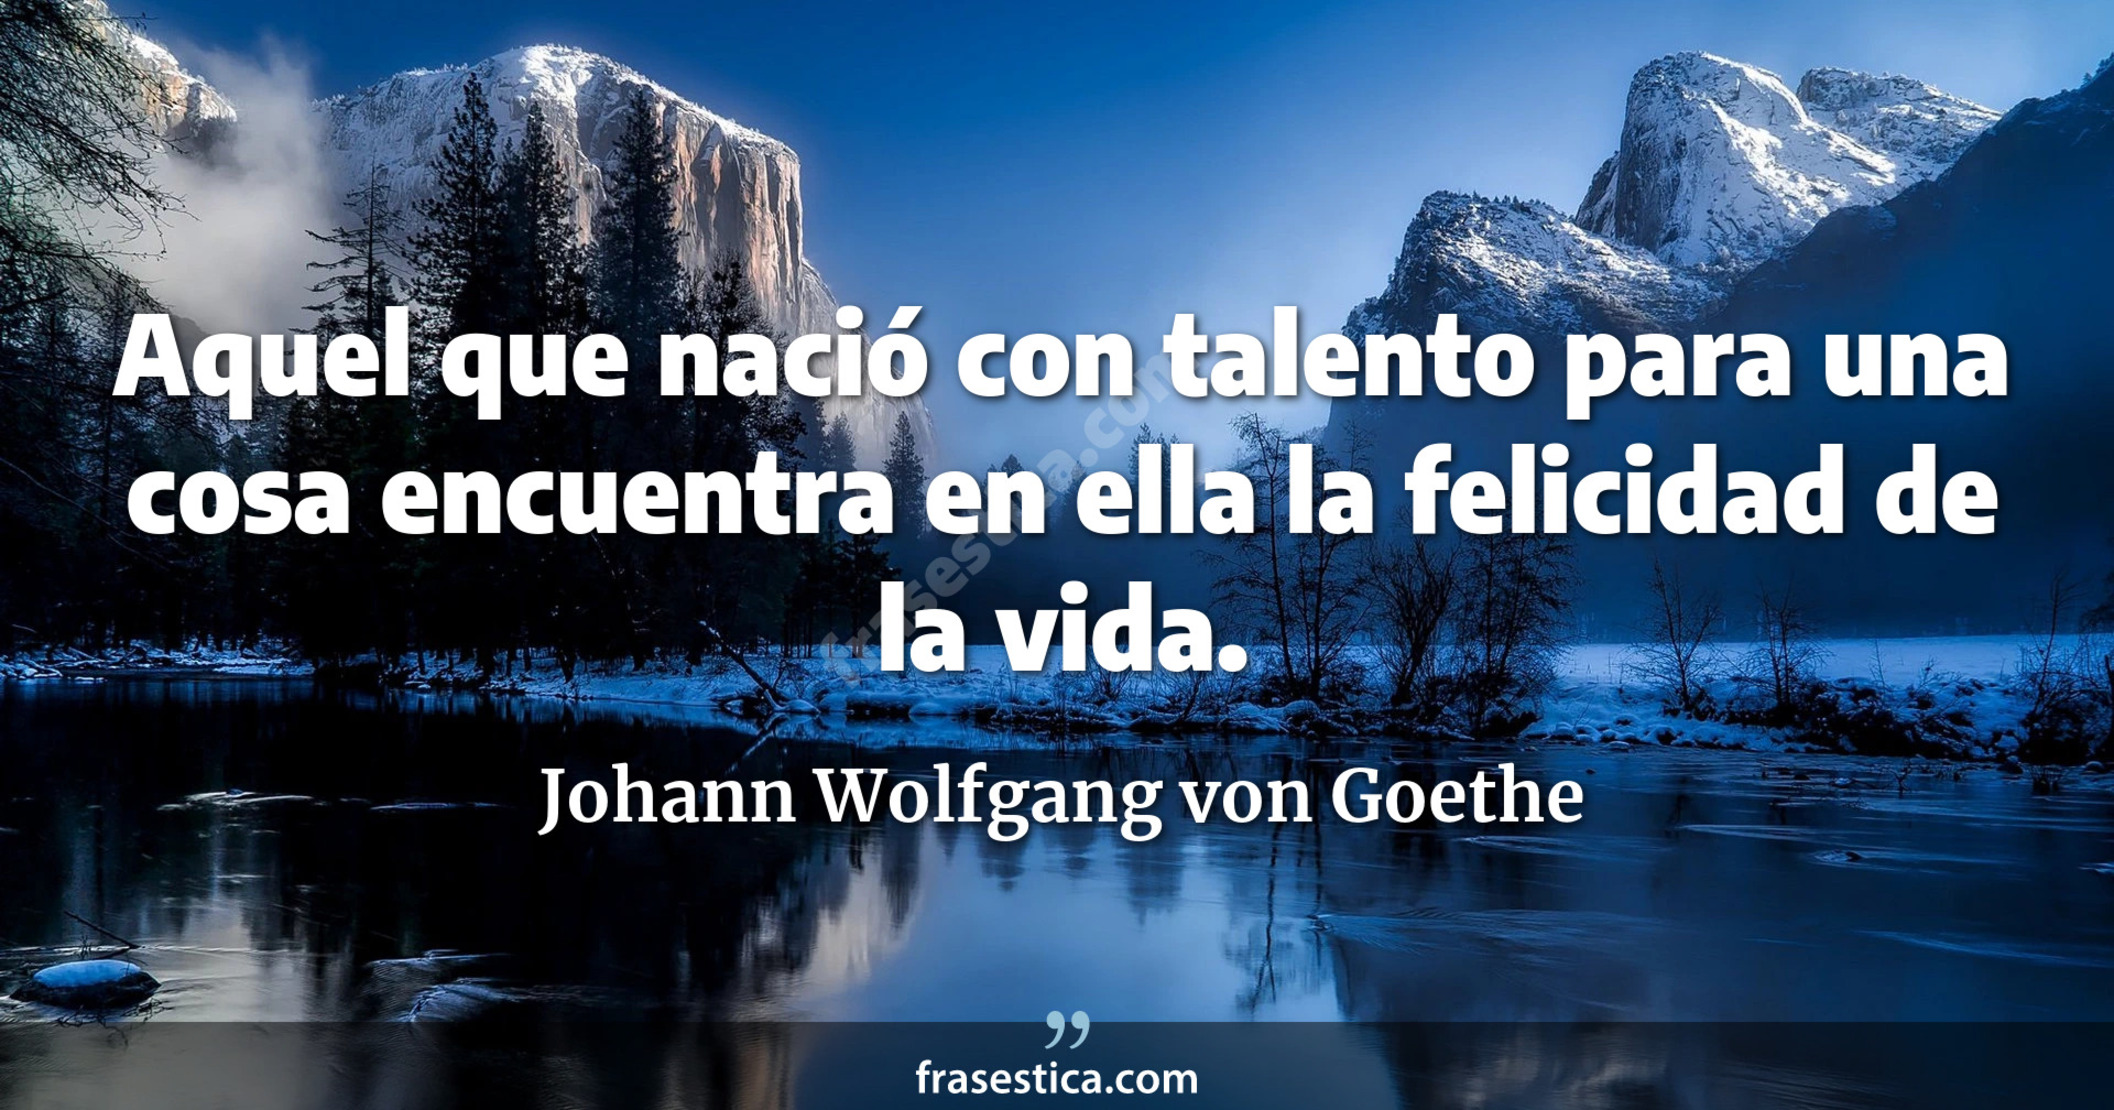 Aquel que nació con talento para una cosa encuentra en ella la felicidad de la vida. - Johann Wolfgang von Goethe